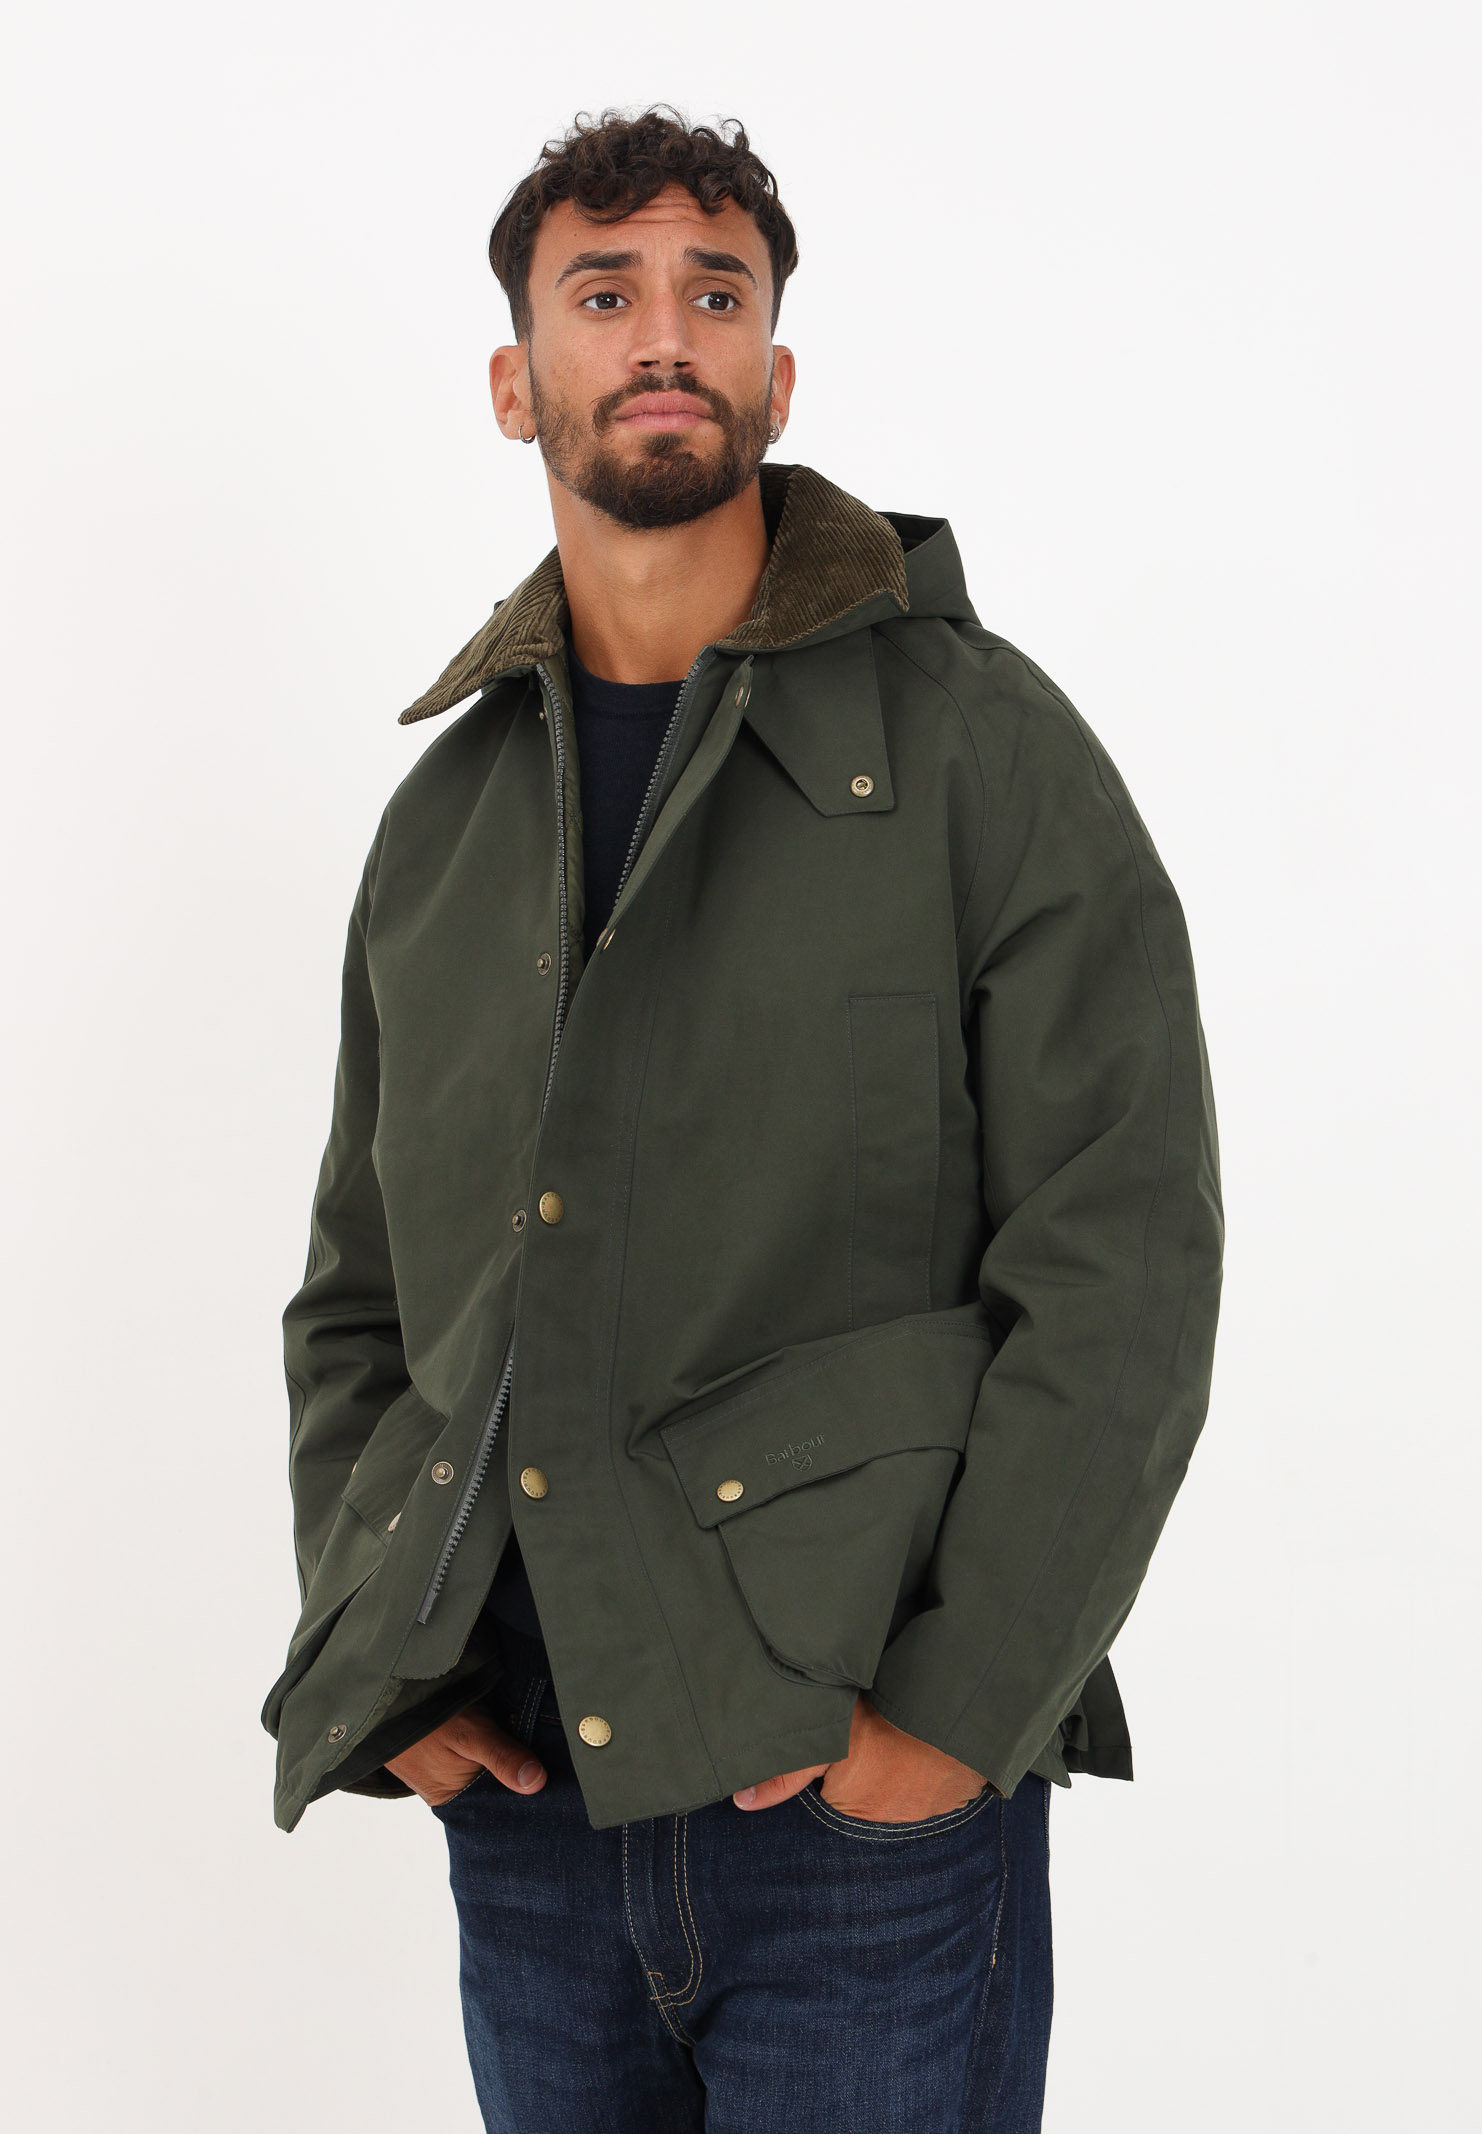 giacca lunga da uomo colore verde mimetico. BARBOUR | 232 - MWB1001 MWBSG51